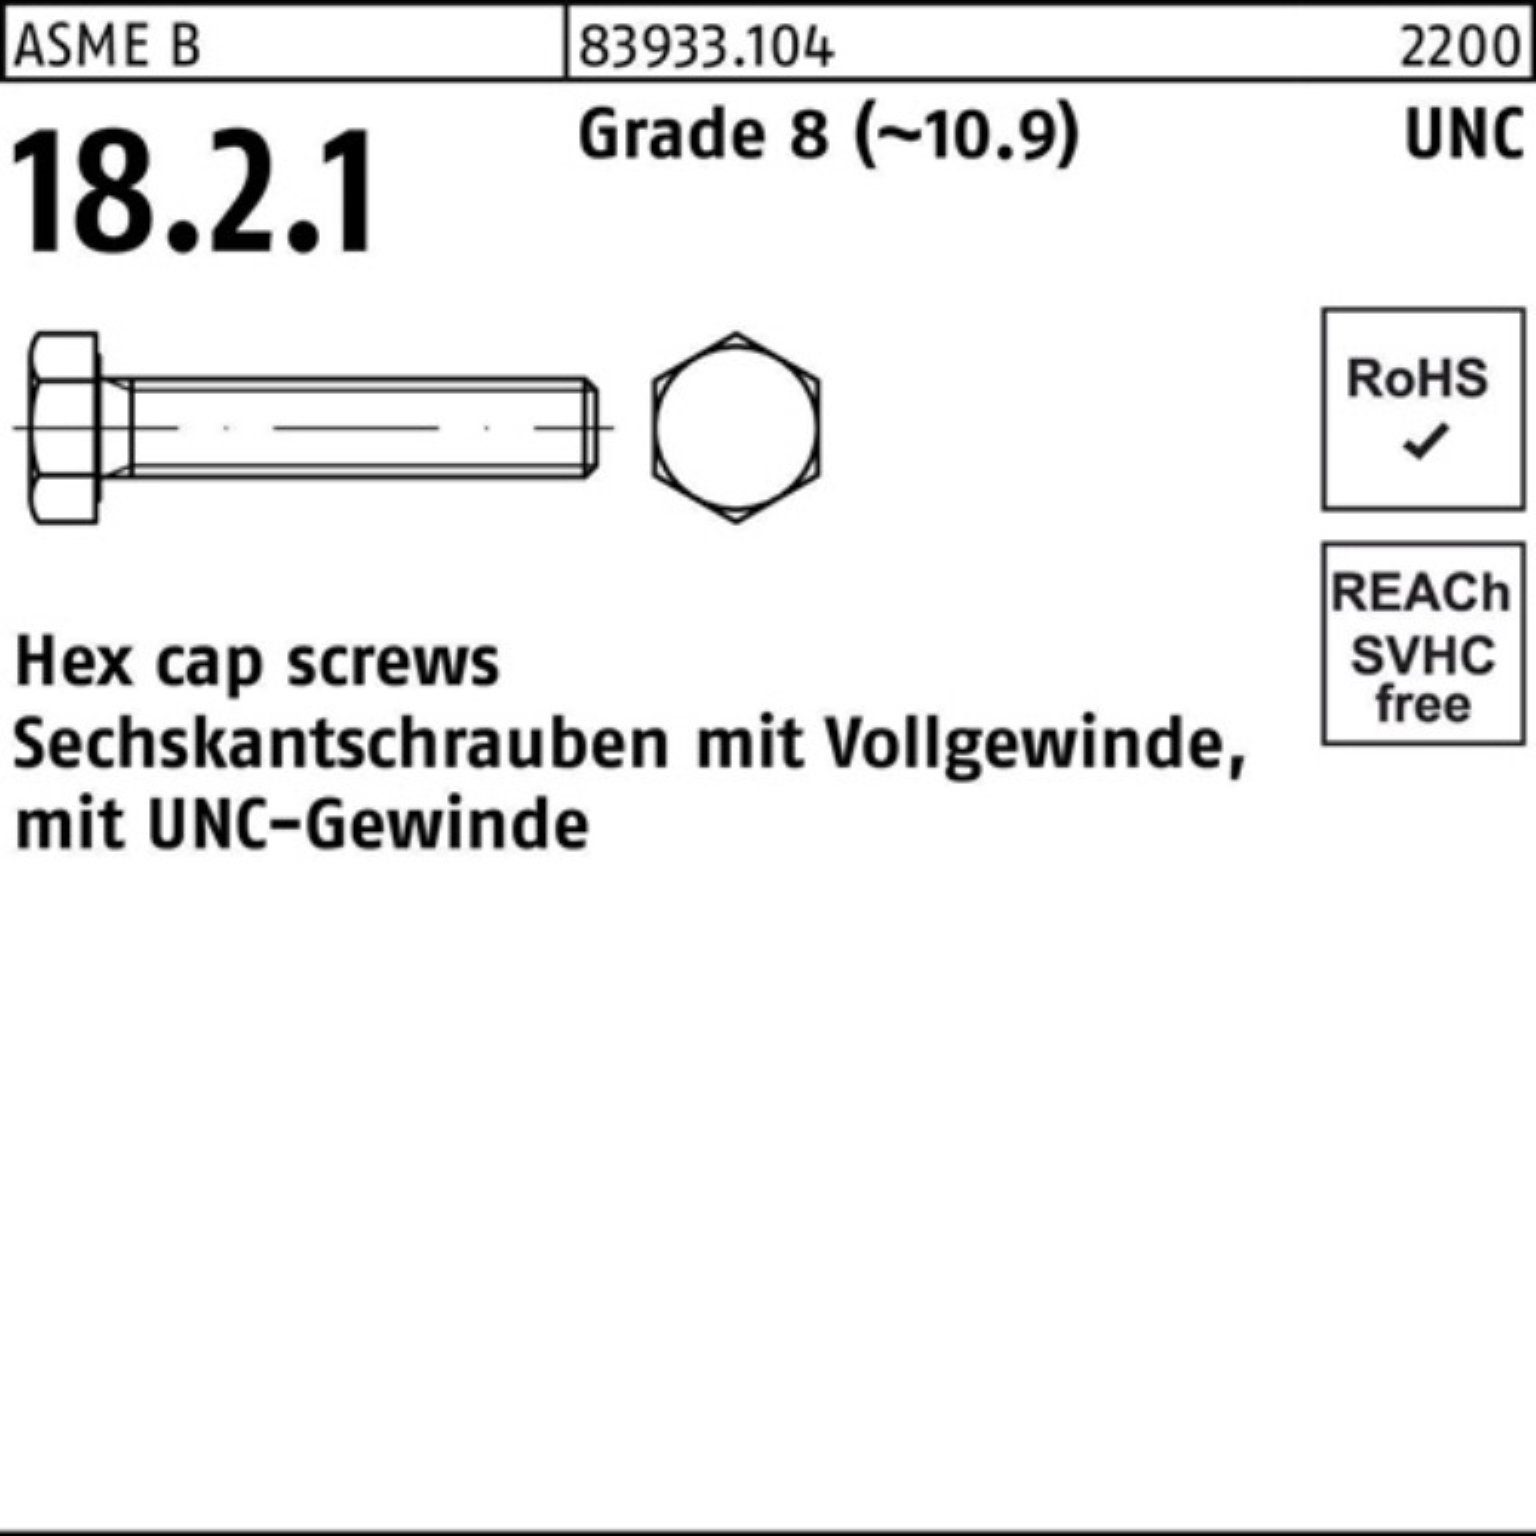 Reyher Sechskantschraube 100er Pack Sechskantschraube R 83933 UNC-Gewinde VG 1 1/2x 3 Grade 8